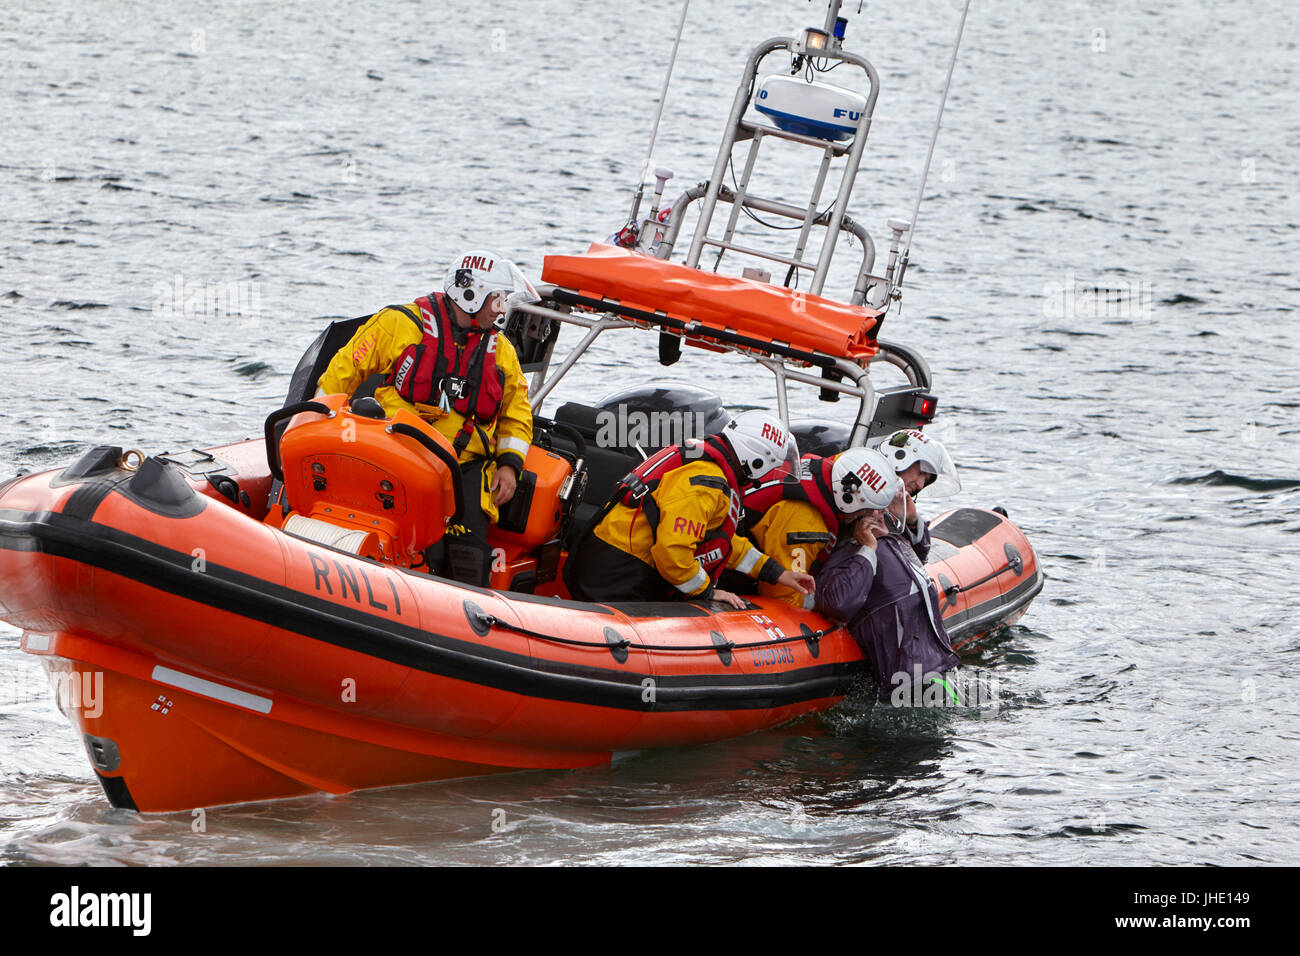 Bangor salvavidas rnli jessie hillyard en demostración de seguridad recuperar el hombre del Mar de Irlanda del Norte Foto de stock